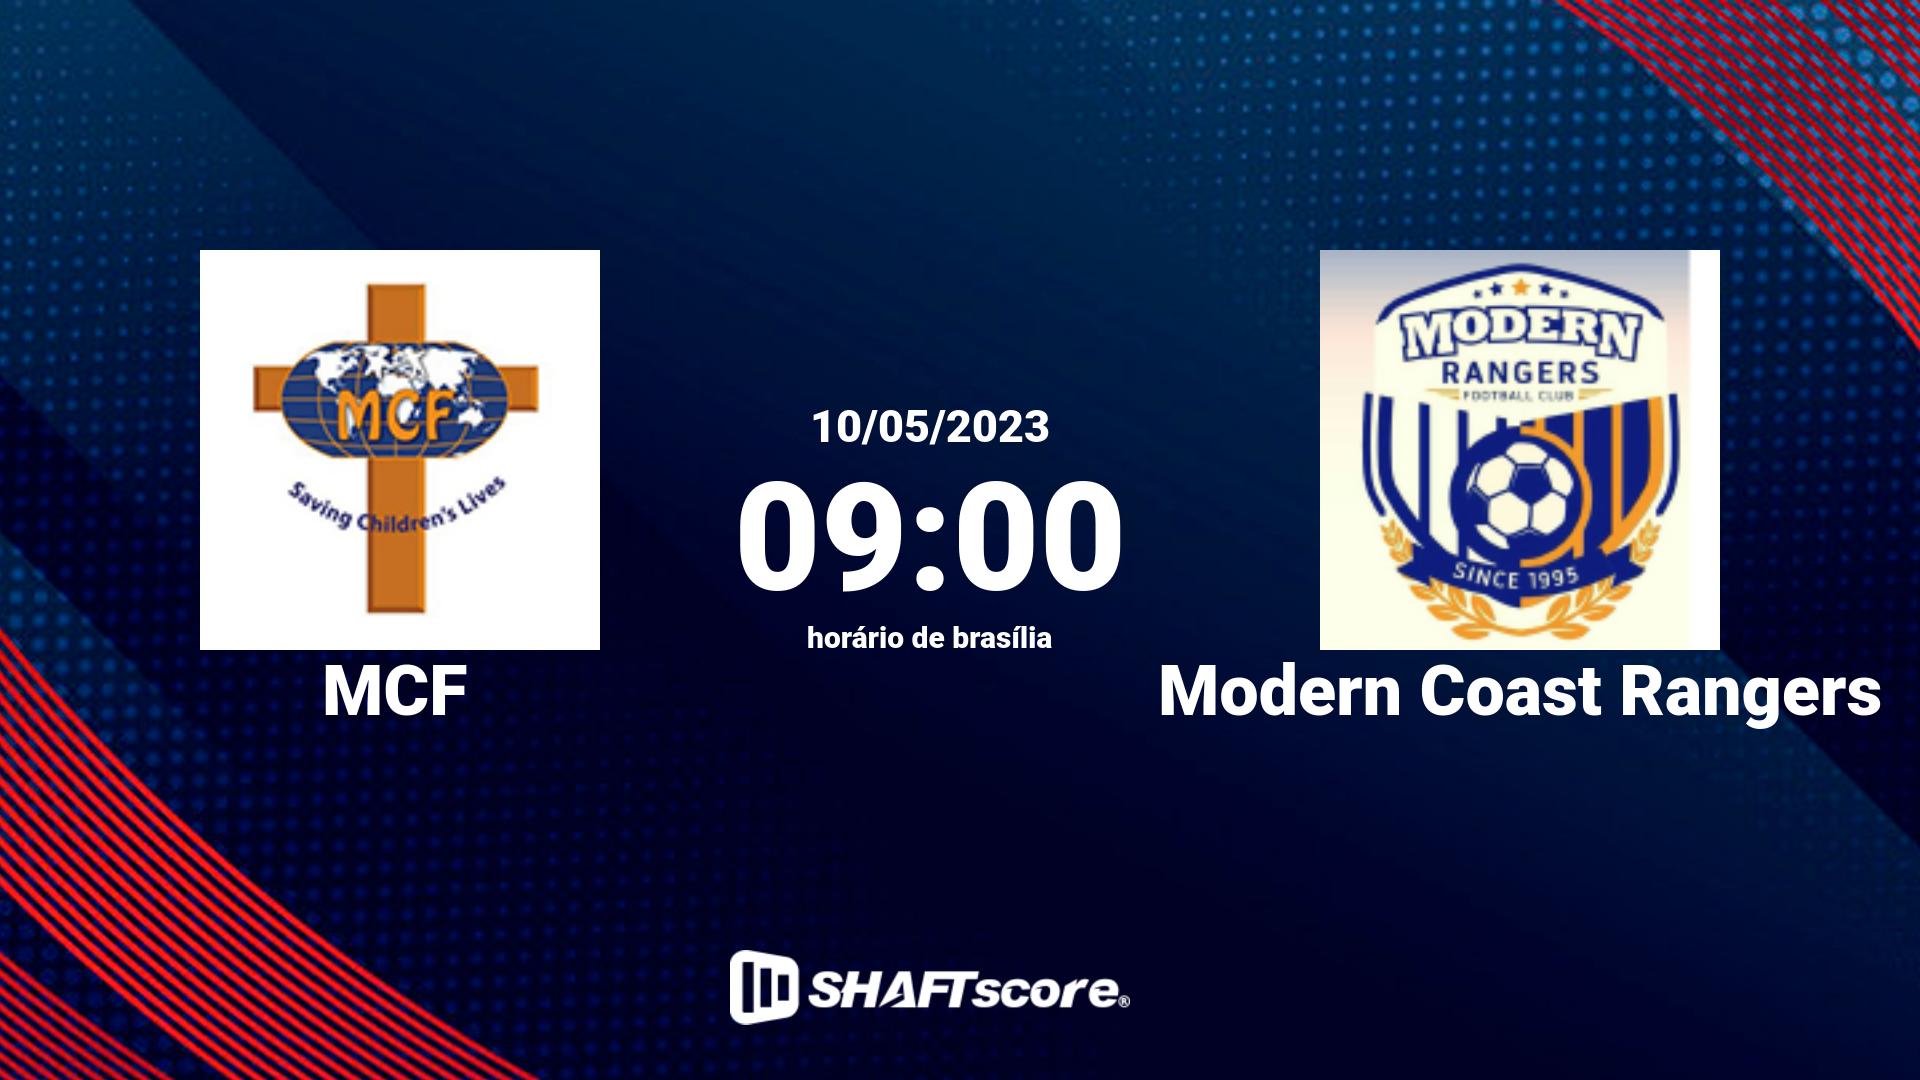 Estatísticas do jogo MCF vs Modern Coast Rangers 10.05 09:00